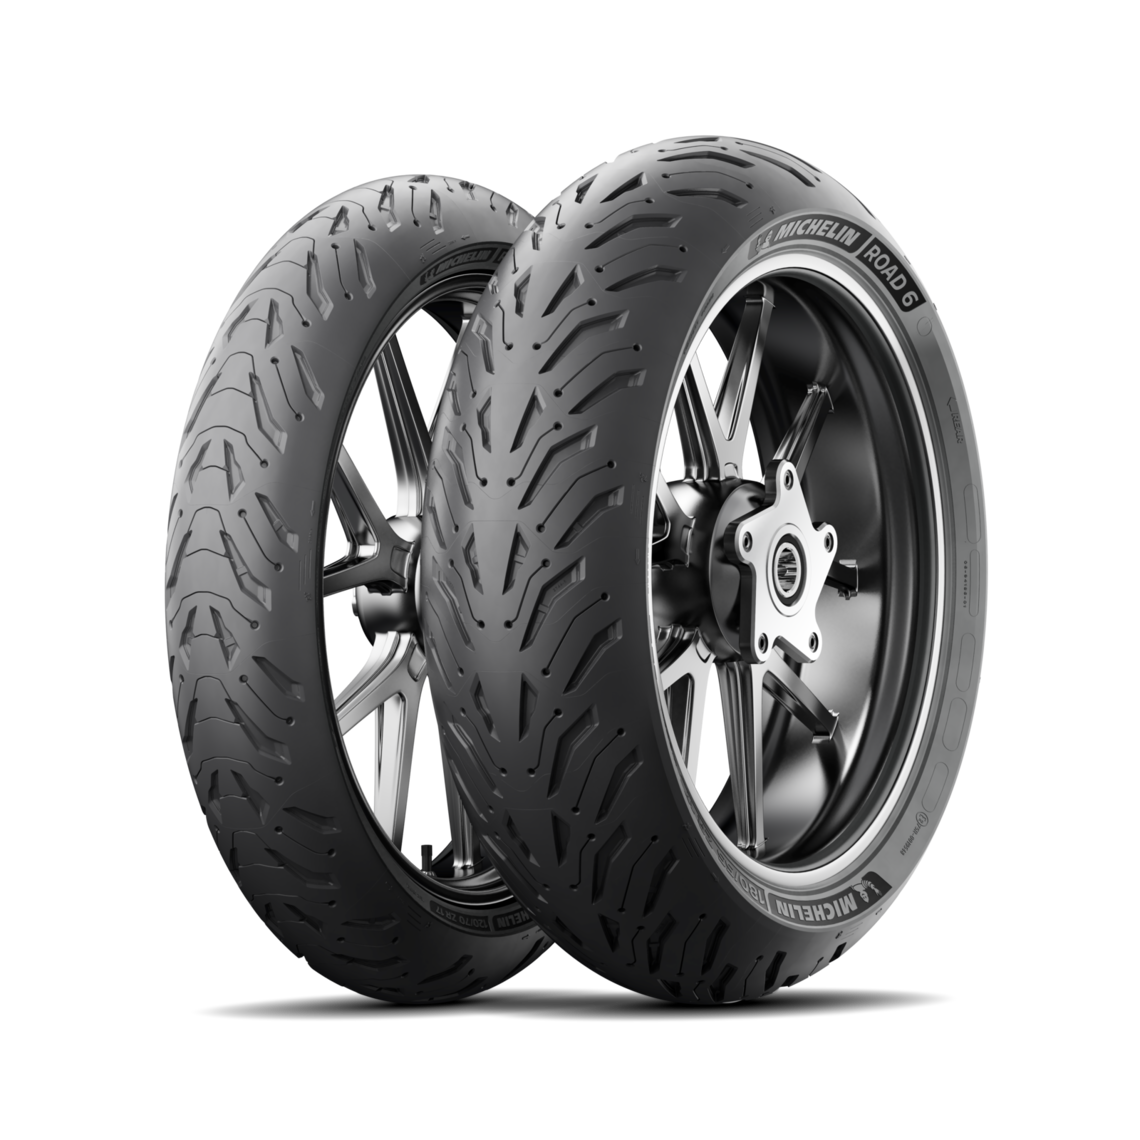 Gomme Nuove Michelin 140/70 R17 66W ROAD 6 M+S pneumatici nuovi Estivo